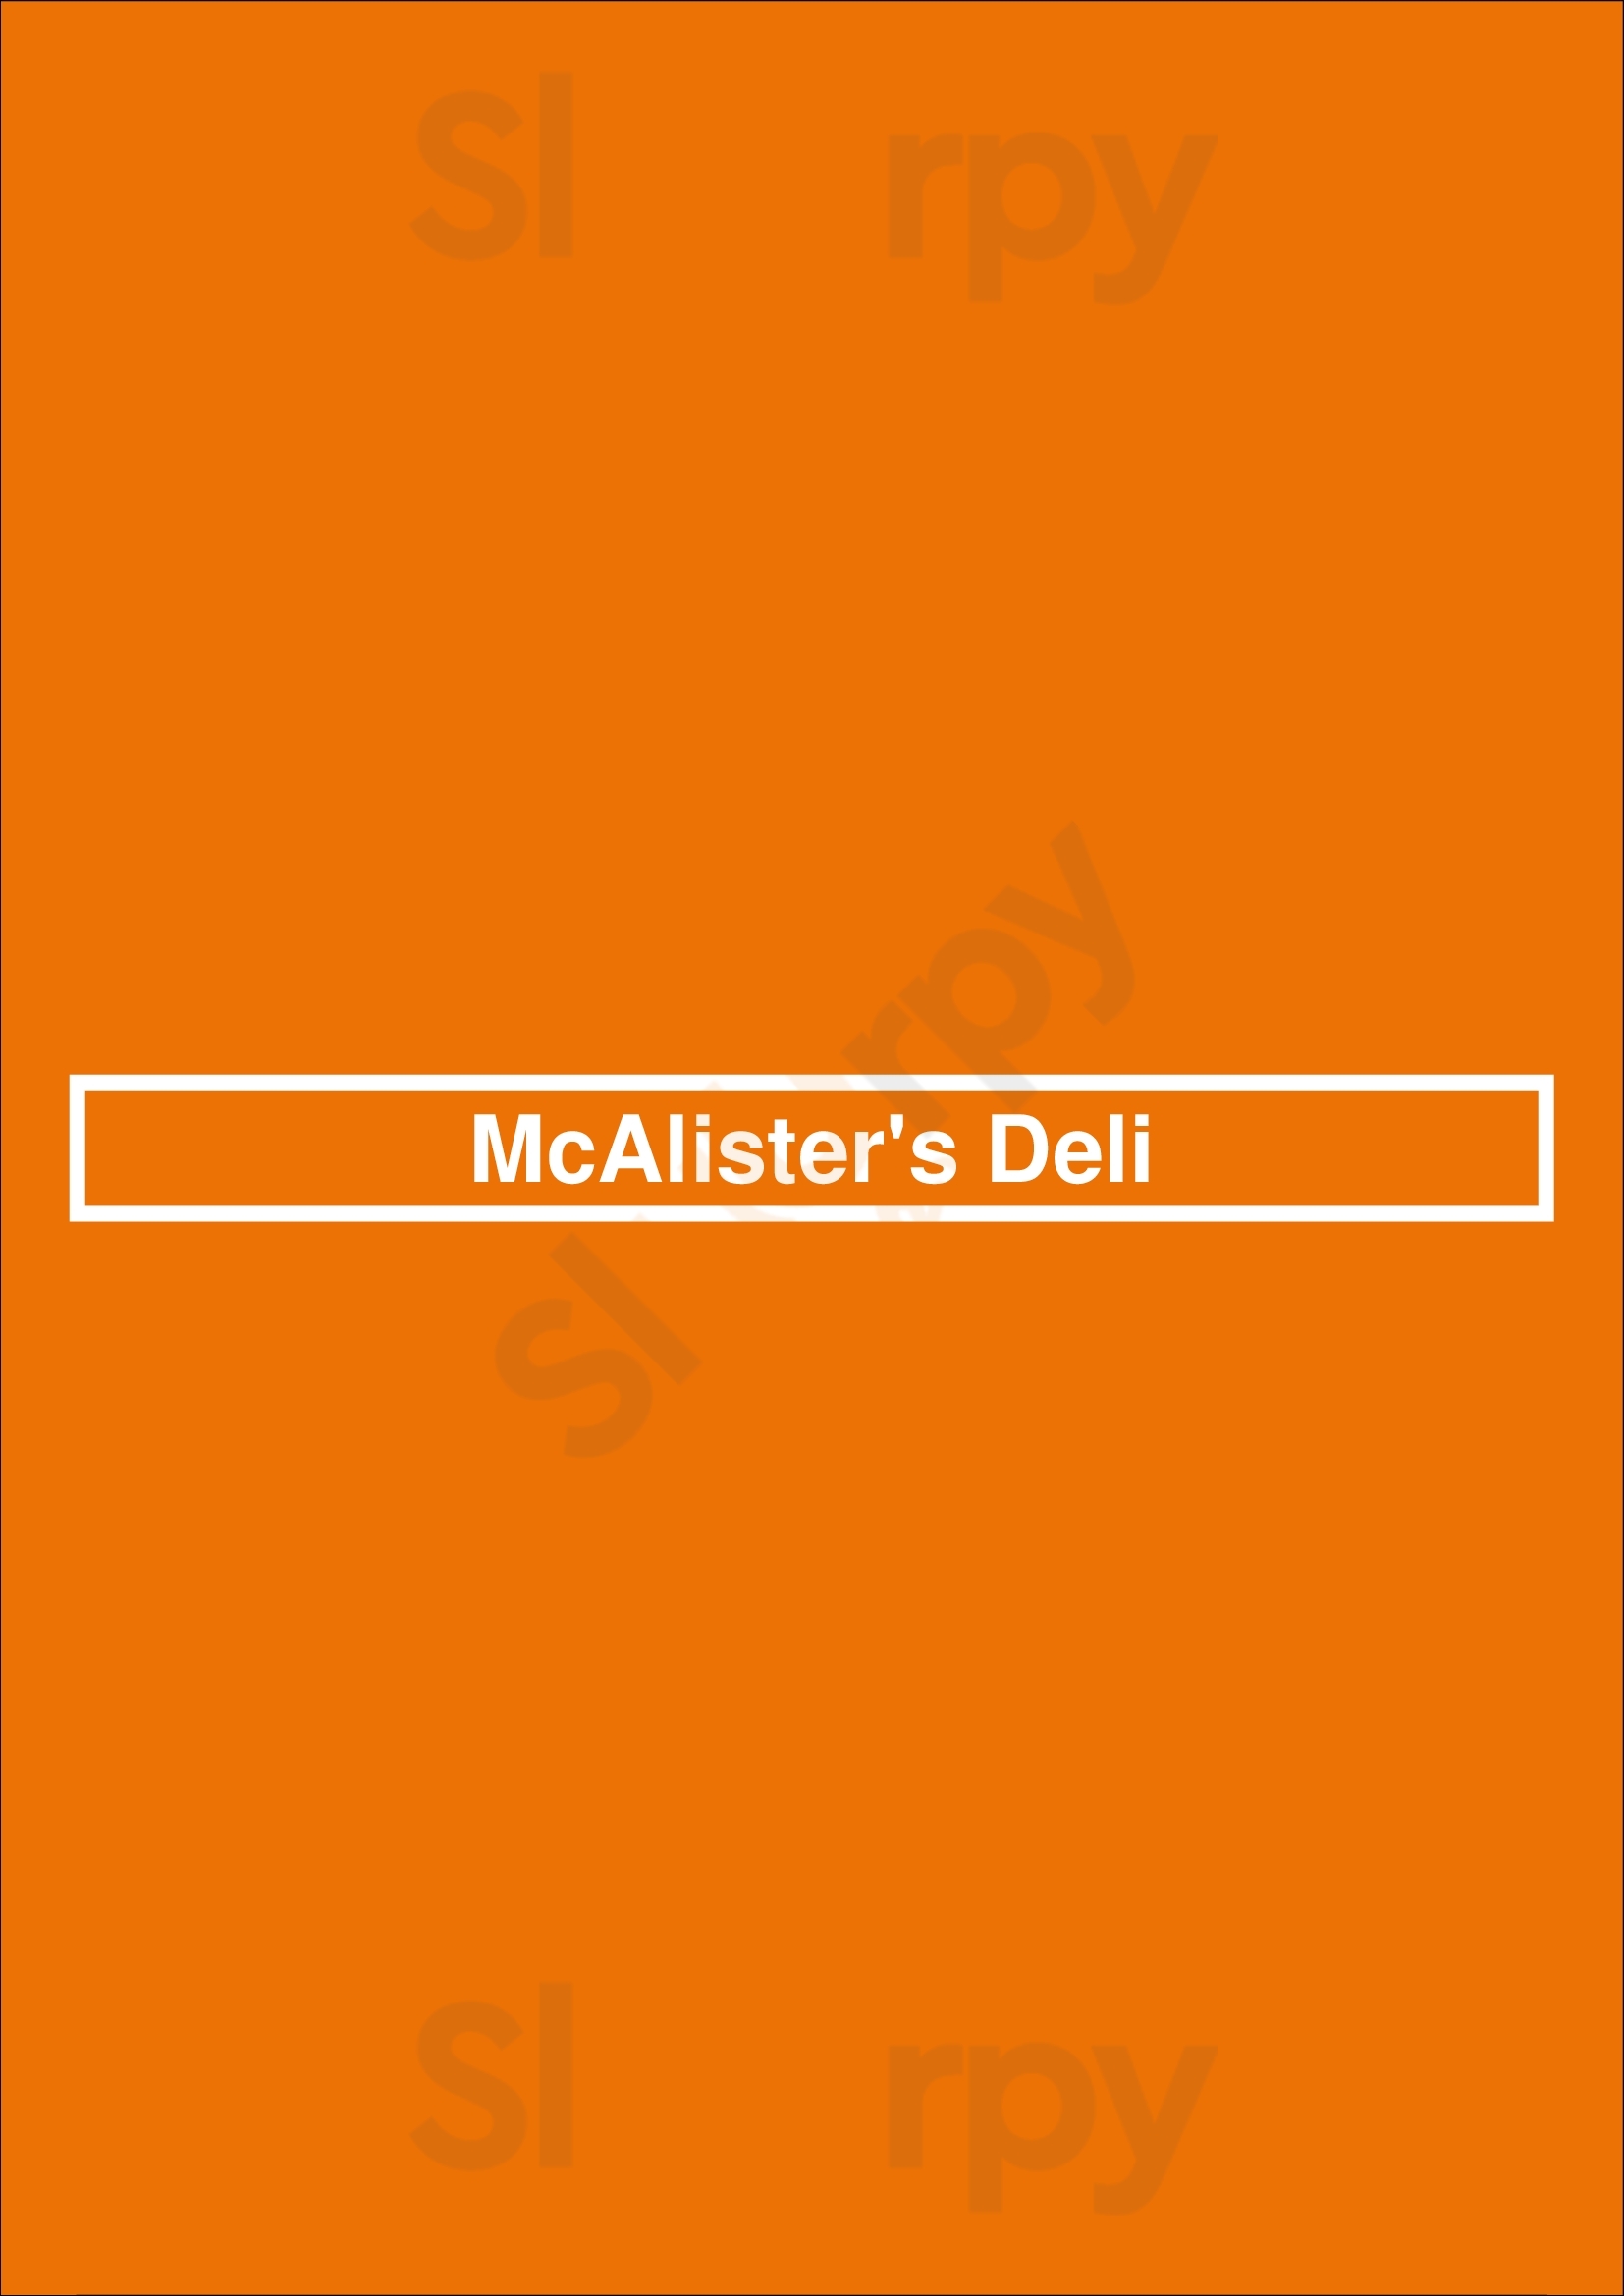 Mcalister's Deli Saint Louis Menu - 1